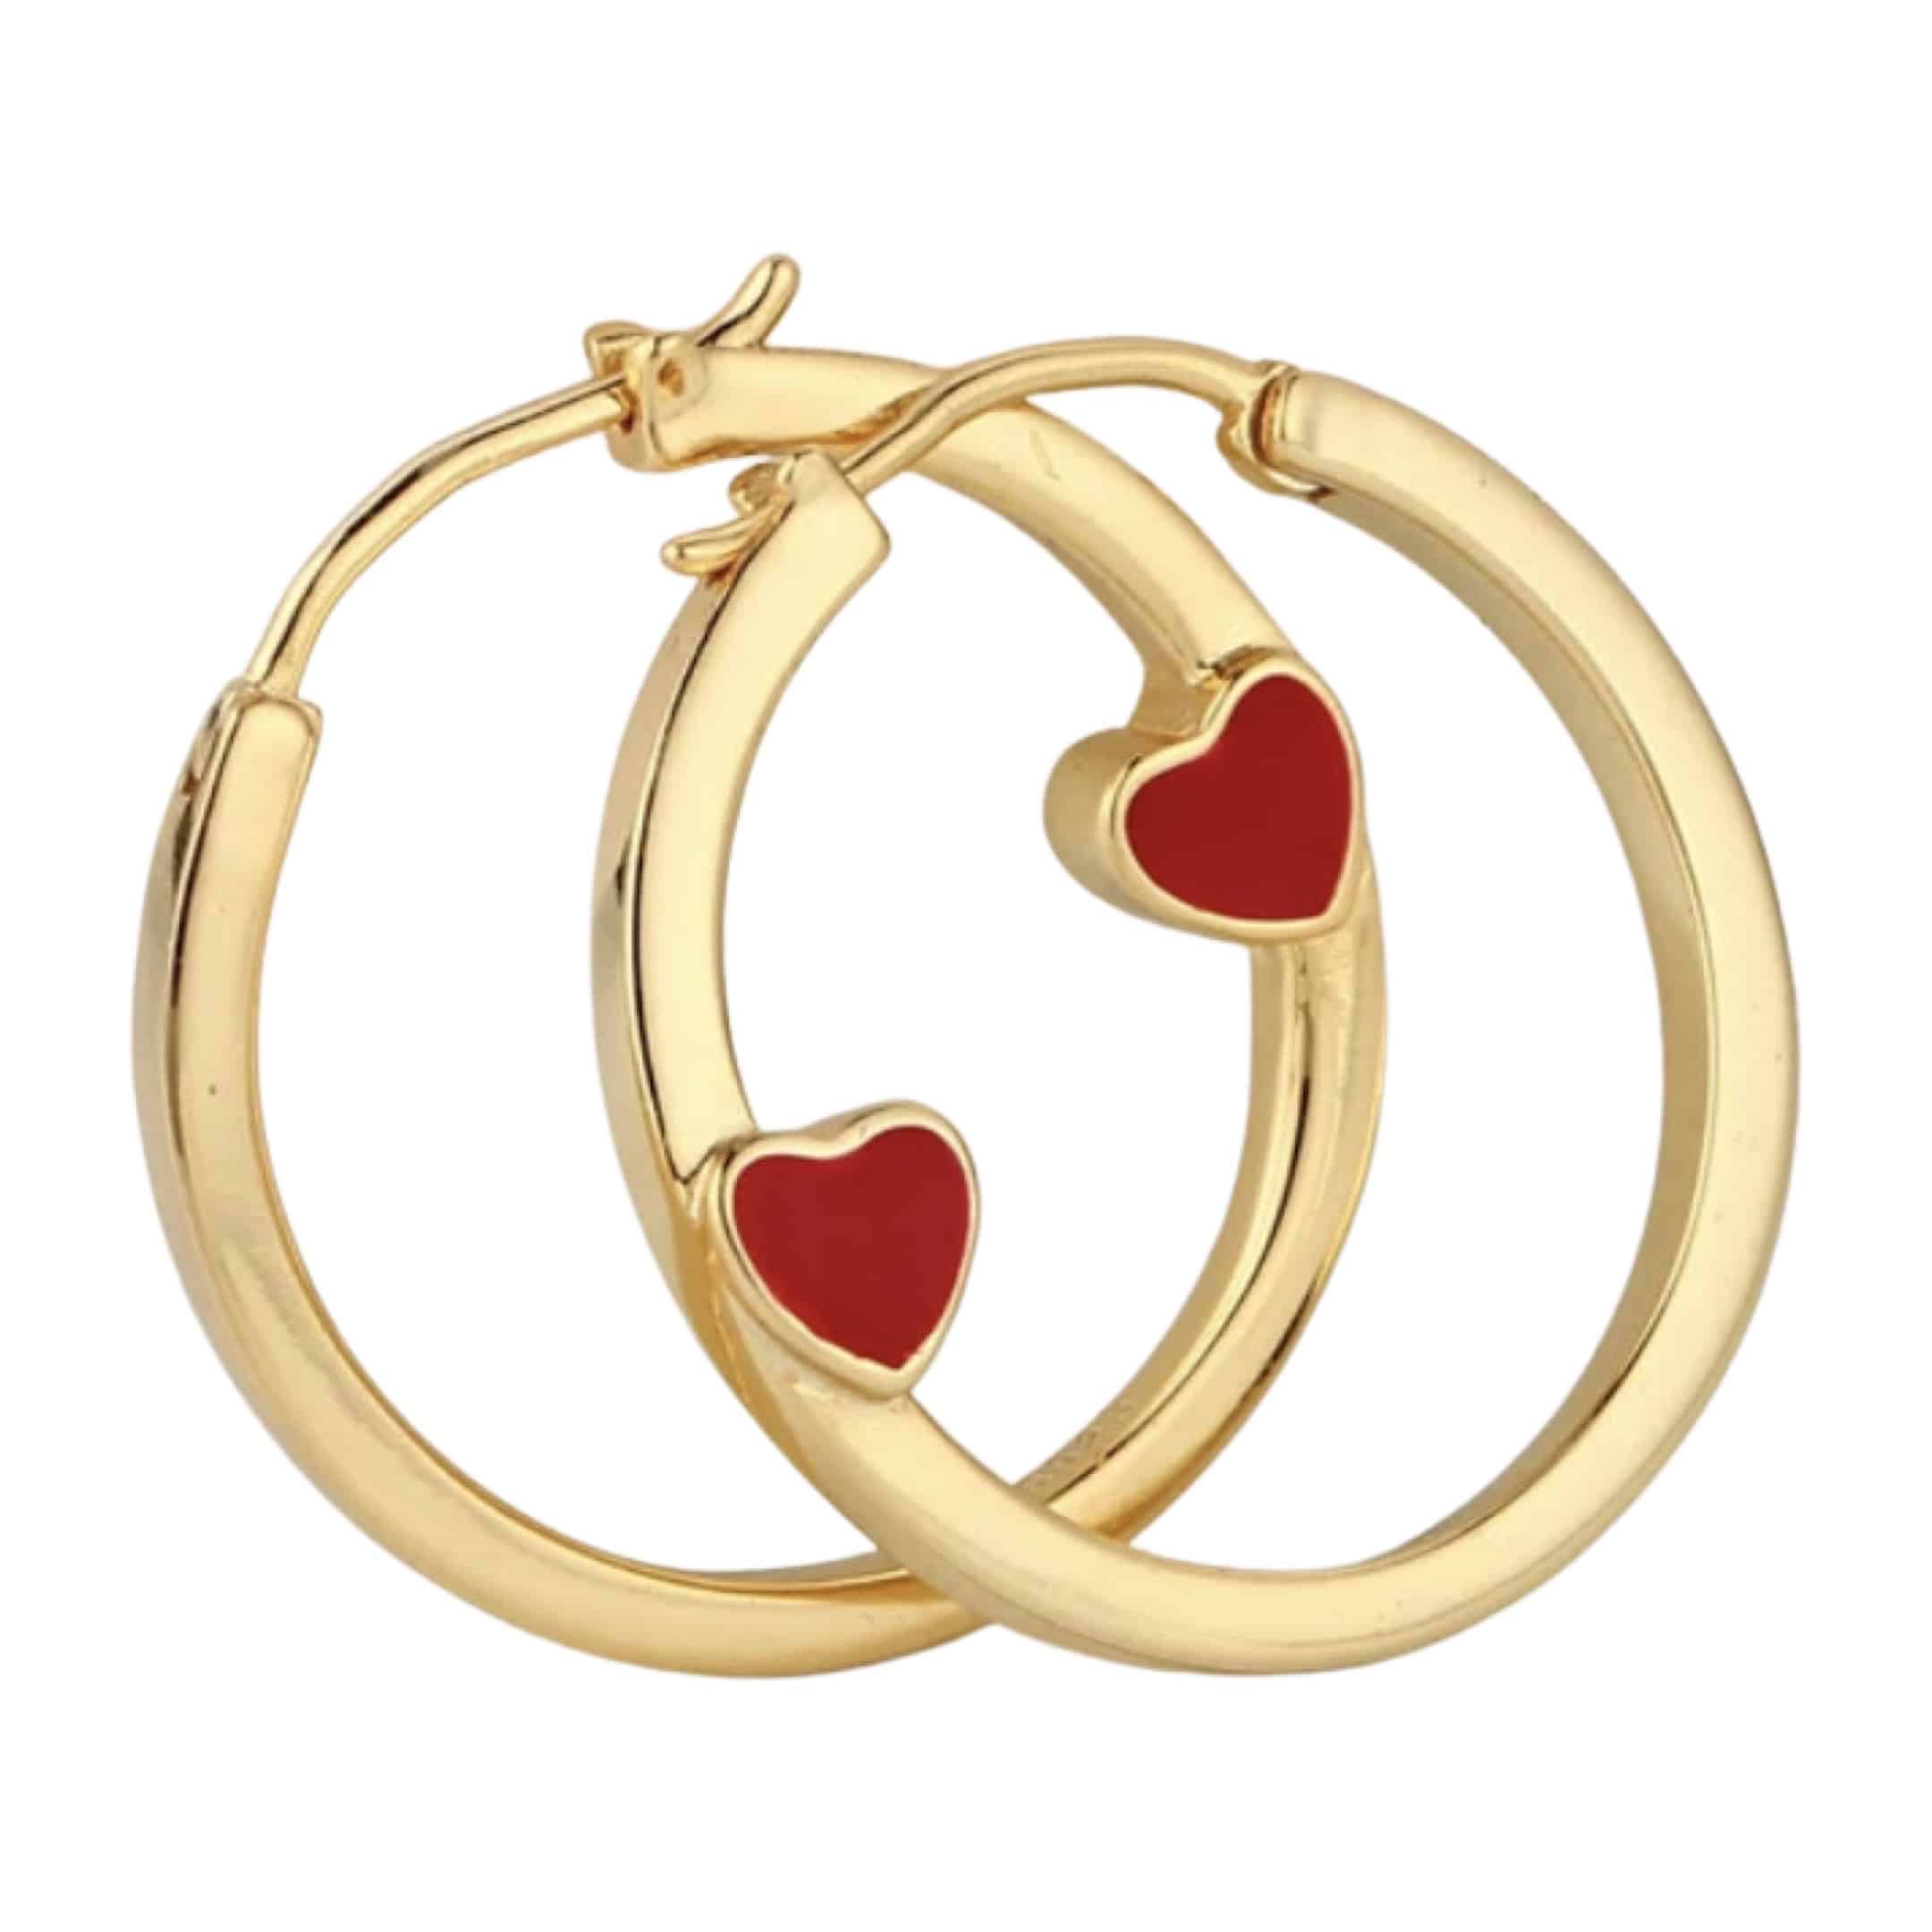 Product Afbeelding Vooraanzicht van onze nieuwe gouden oorringen. Deze oorbellen zijn gemaakt van 925 sterling zilver met een laagje goud. Het hartje is gemaakt van rode emaille. Prachtige oorringen goud met rood hartje.